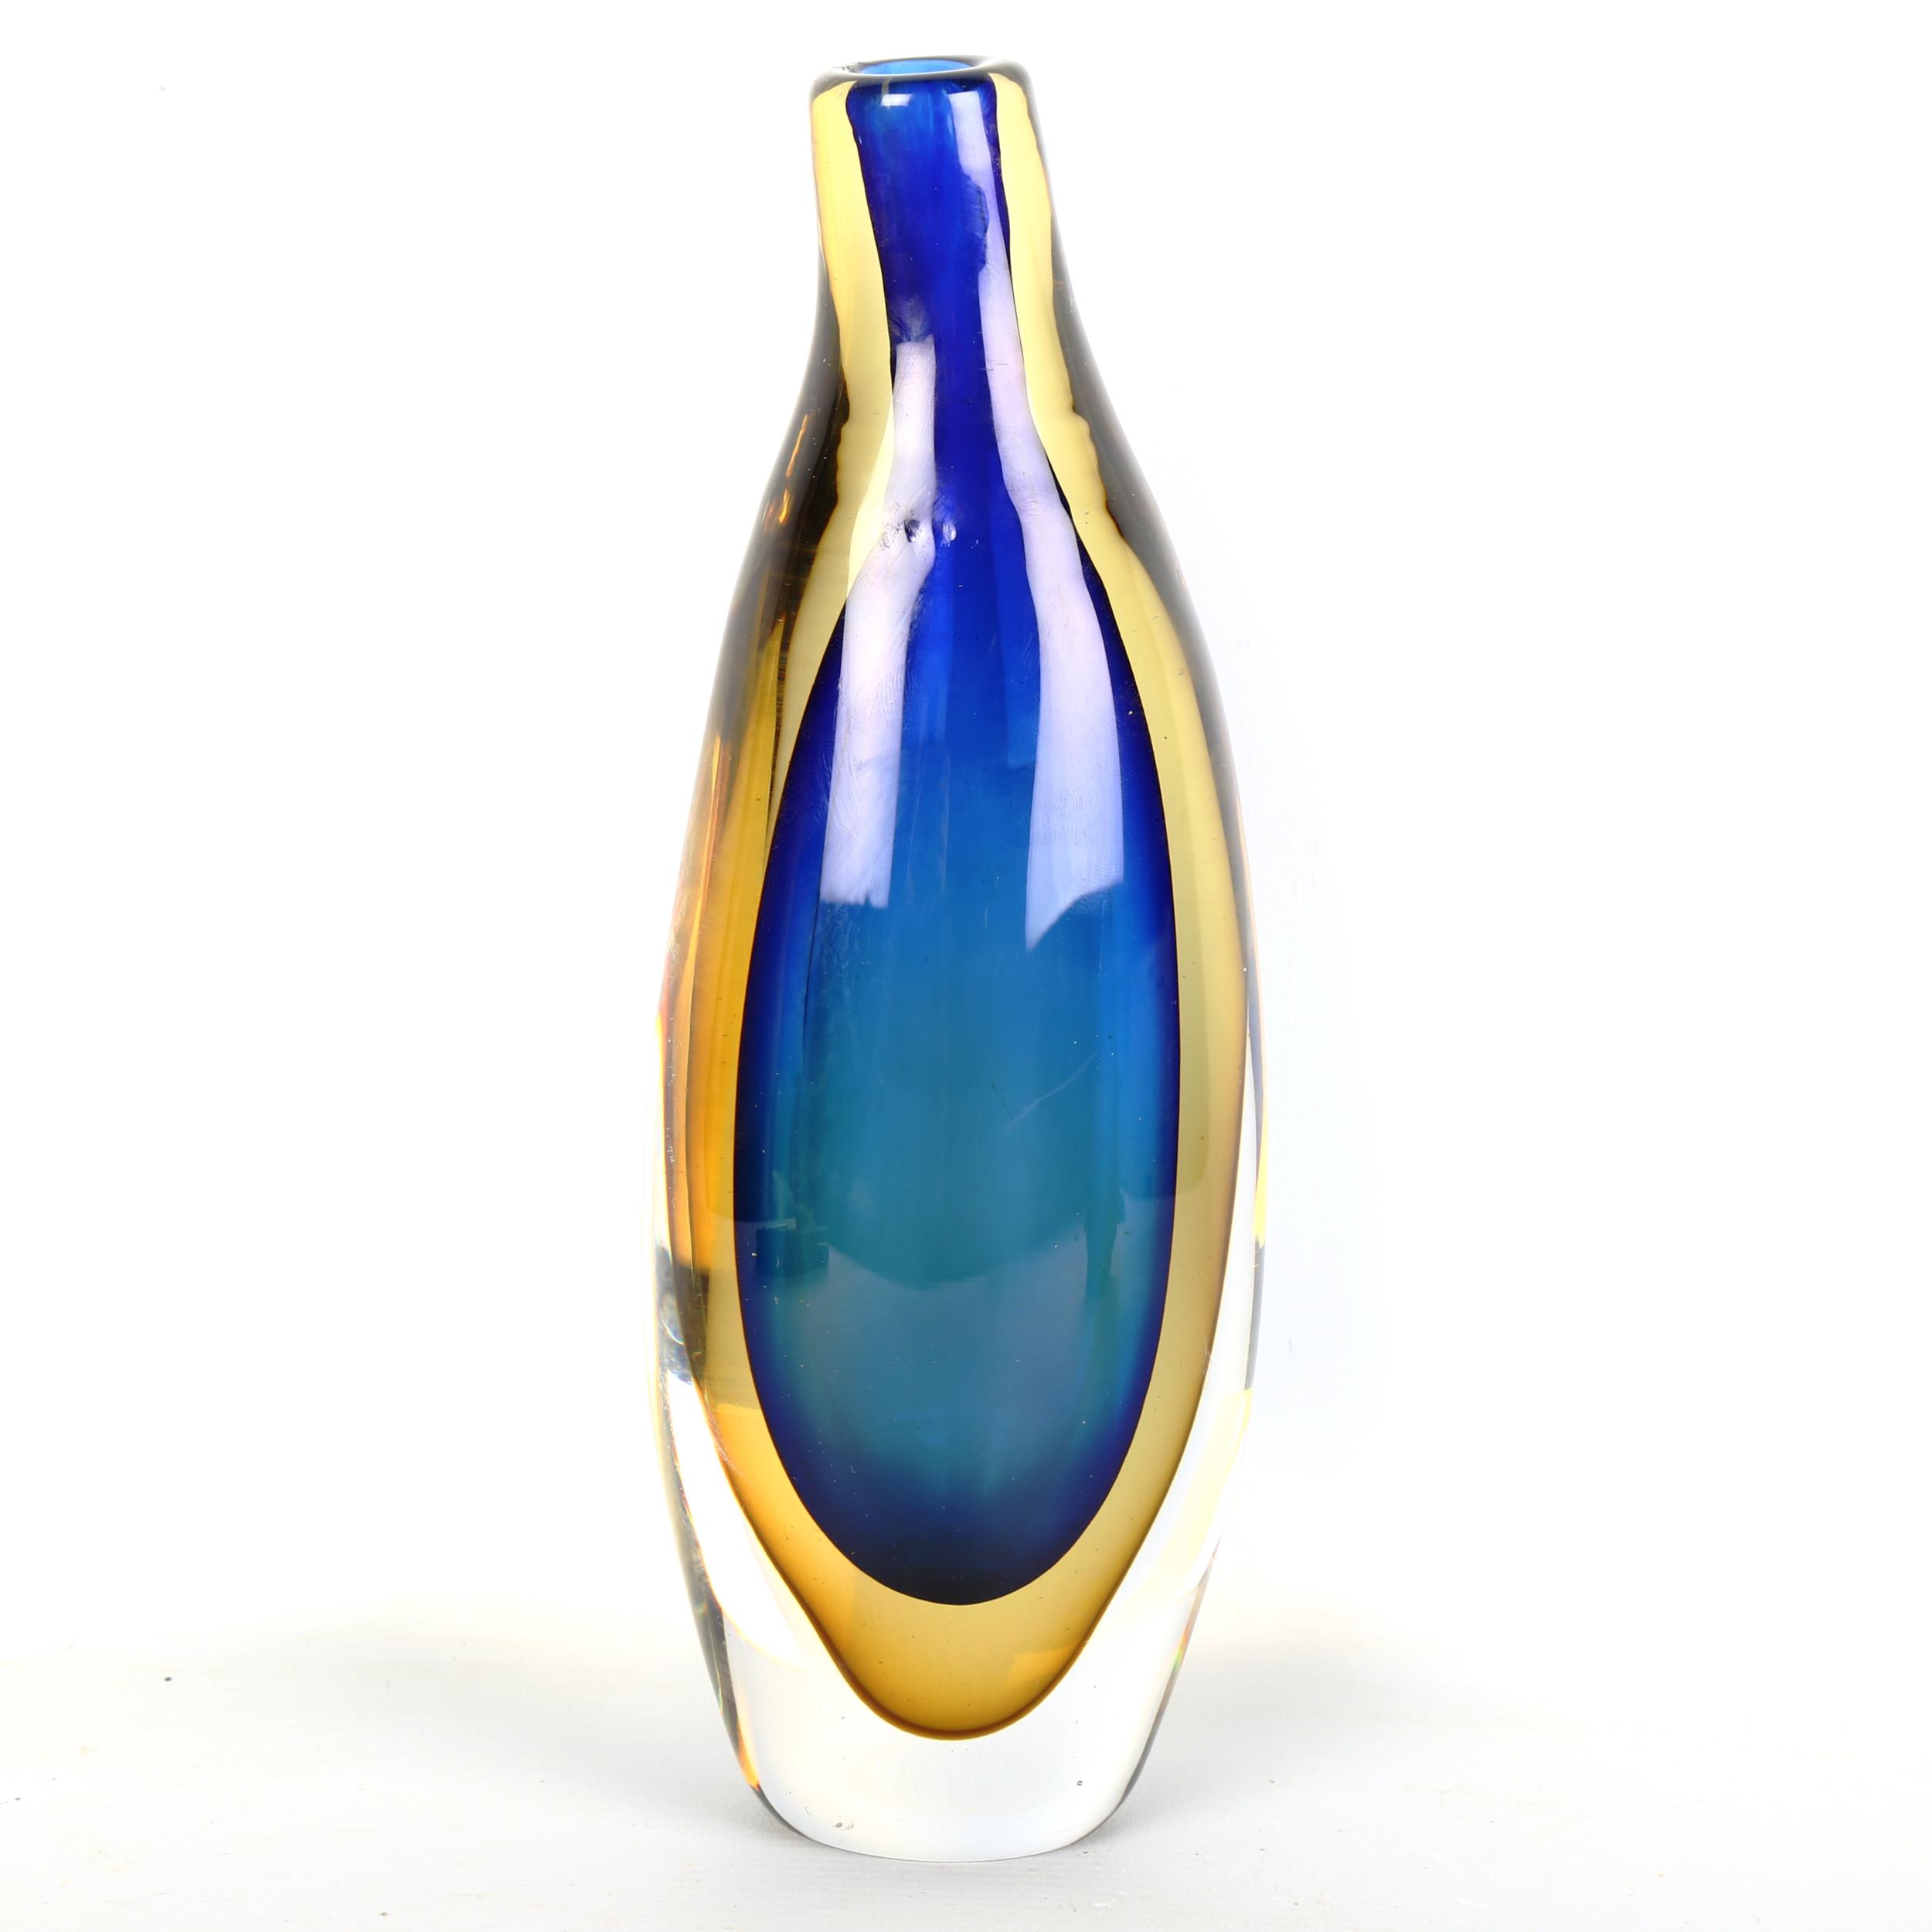 ERNEST GORDON for Kosta, a double sommerso glass vase, signed Kosta GH 5059 Ernest Gordon, height